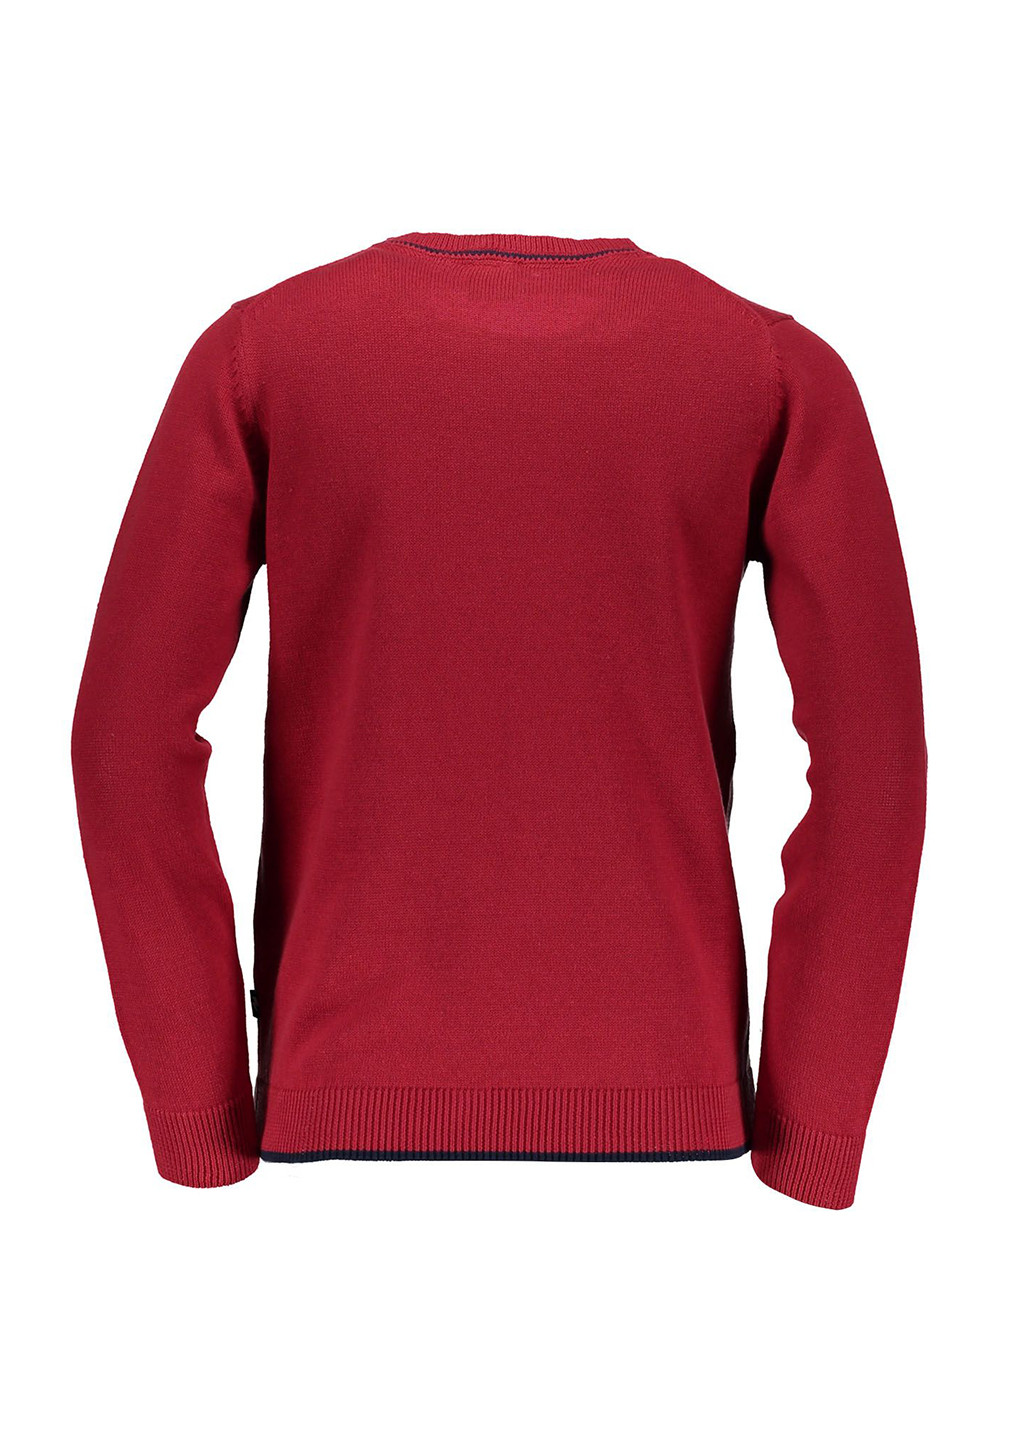 Красный демисезонный пуловер пуловер Piazza Italia